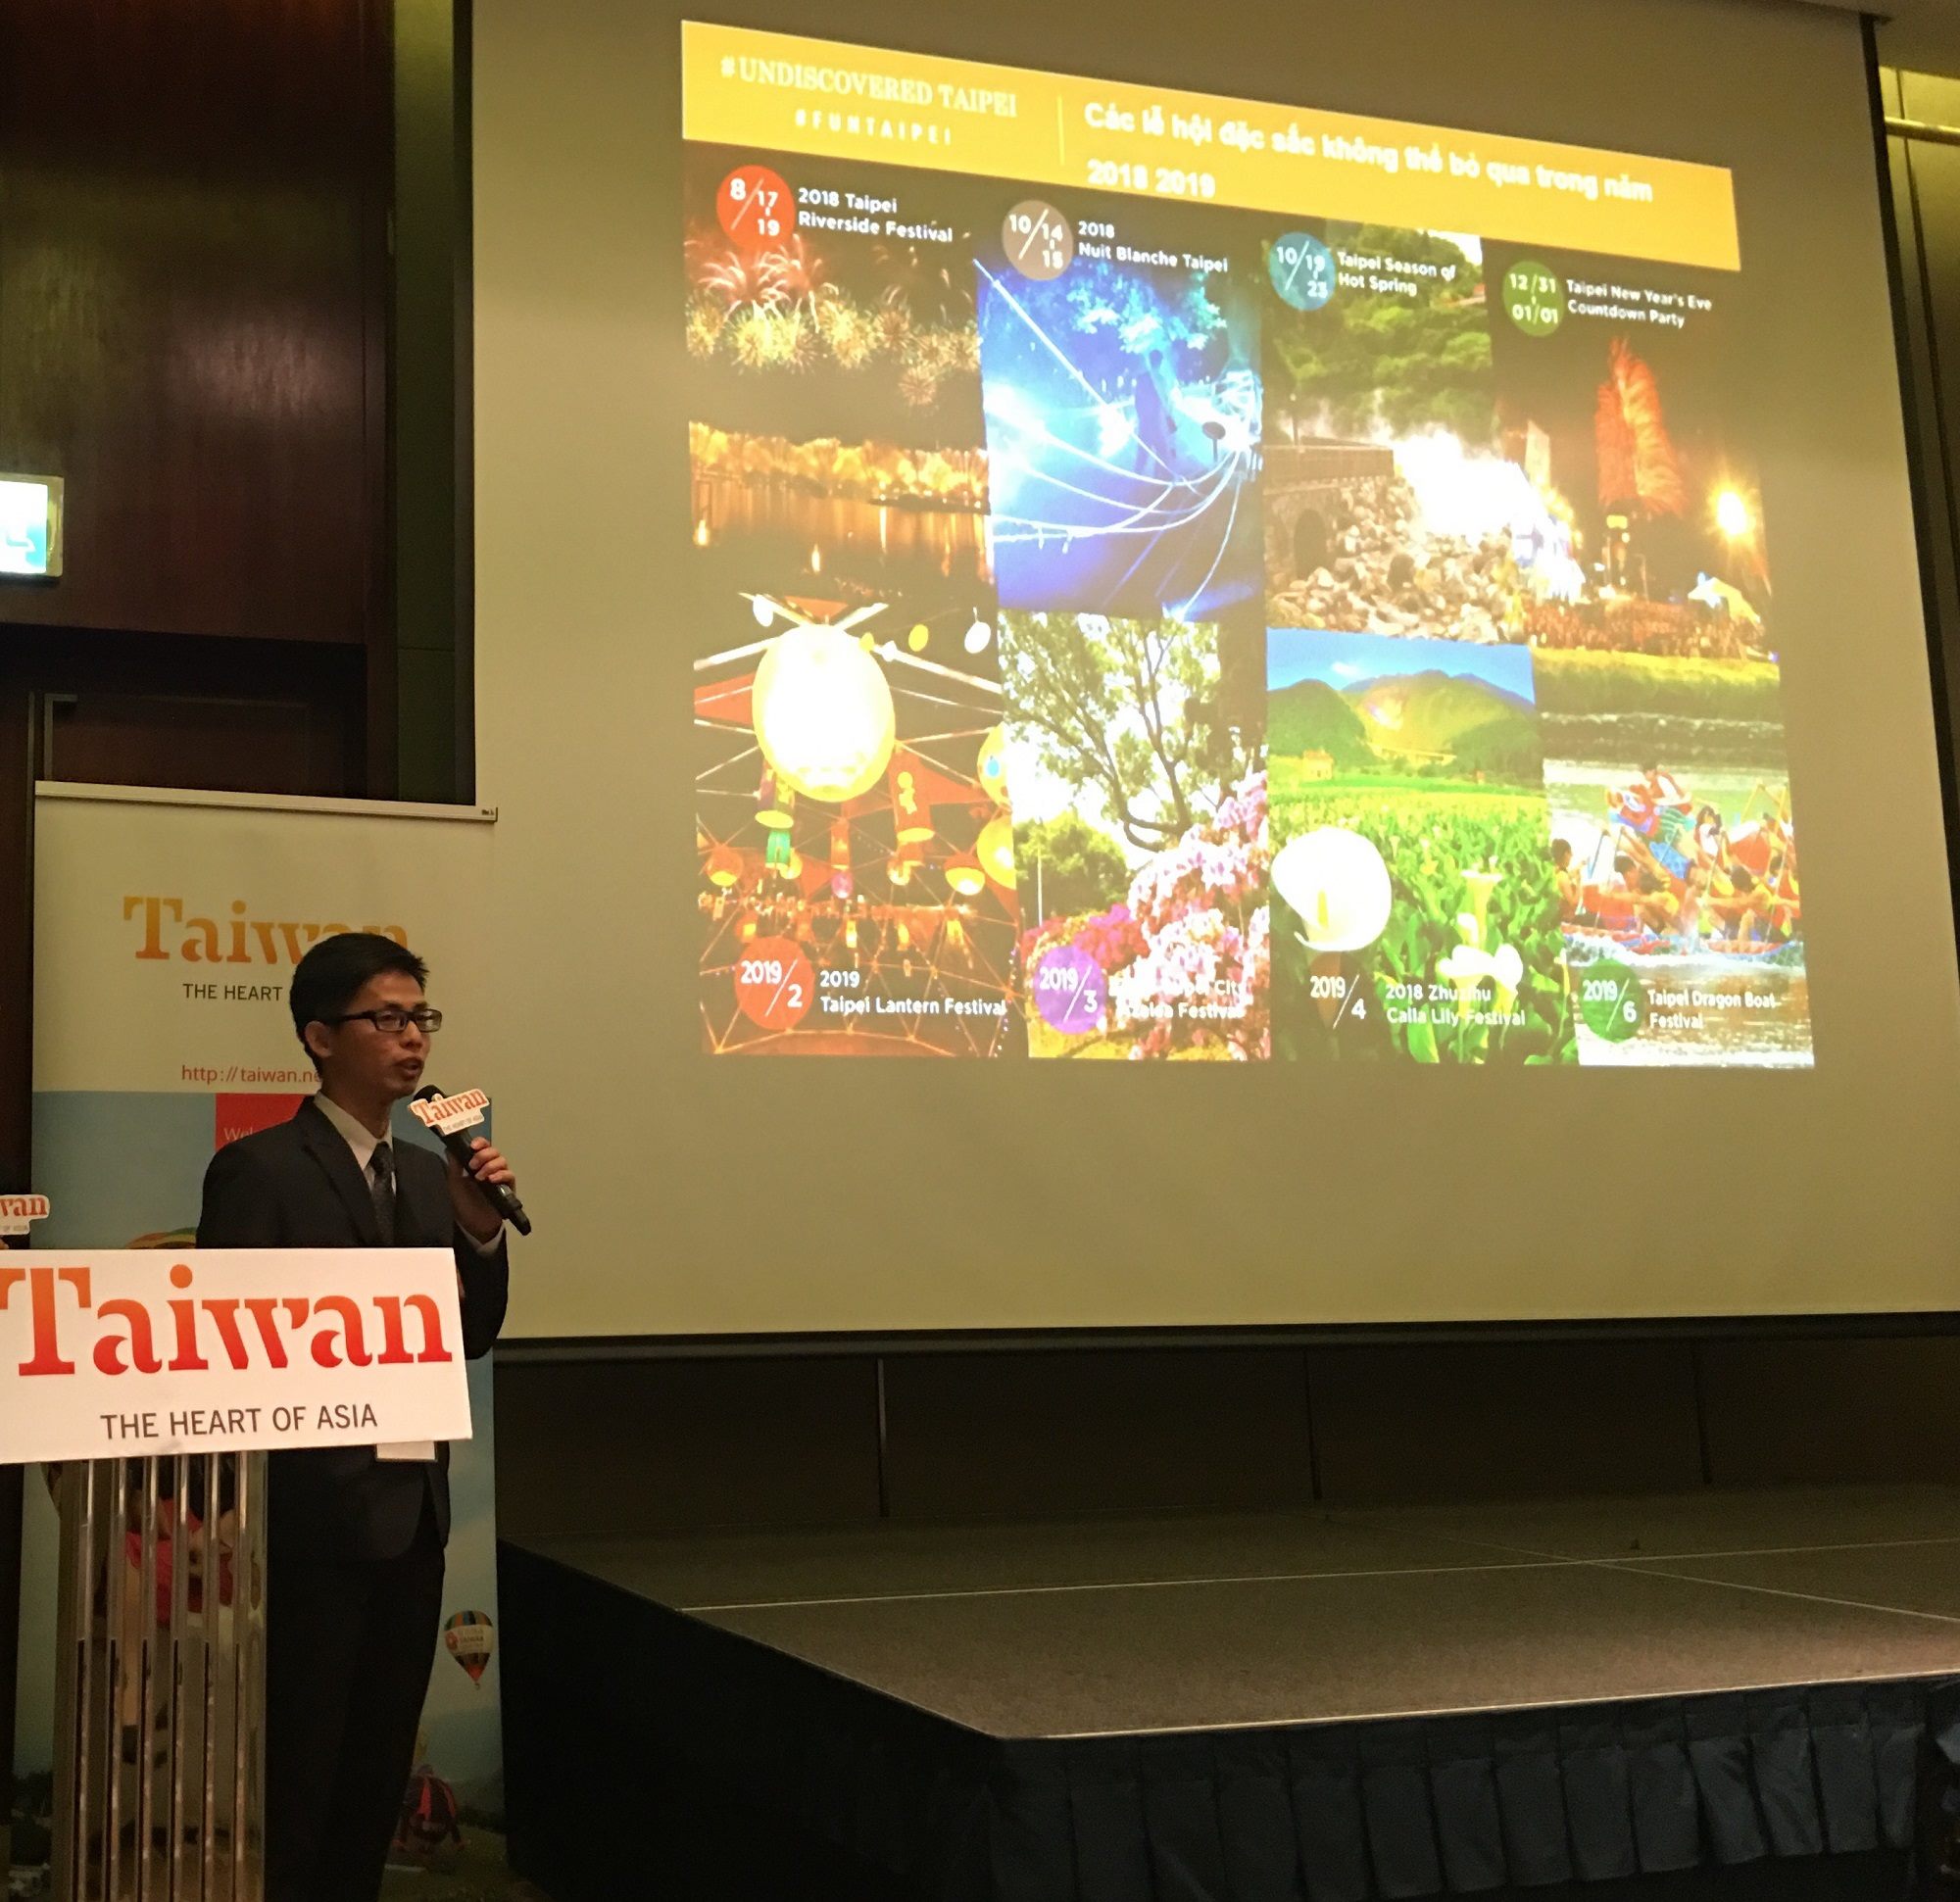 台北市政府观传局代表推荐FUN_TAIPEI美食、购物、消暑、美图之旅及台北市热闹节庆活动。